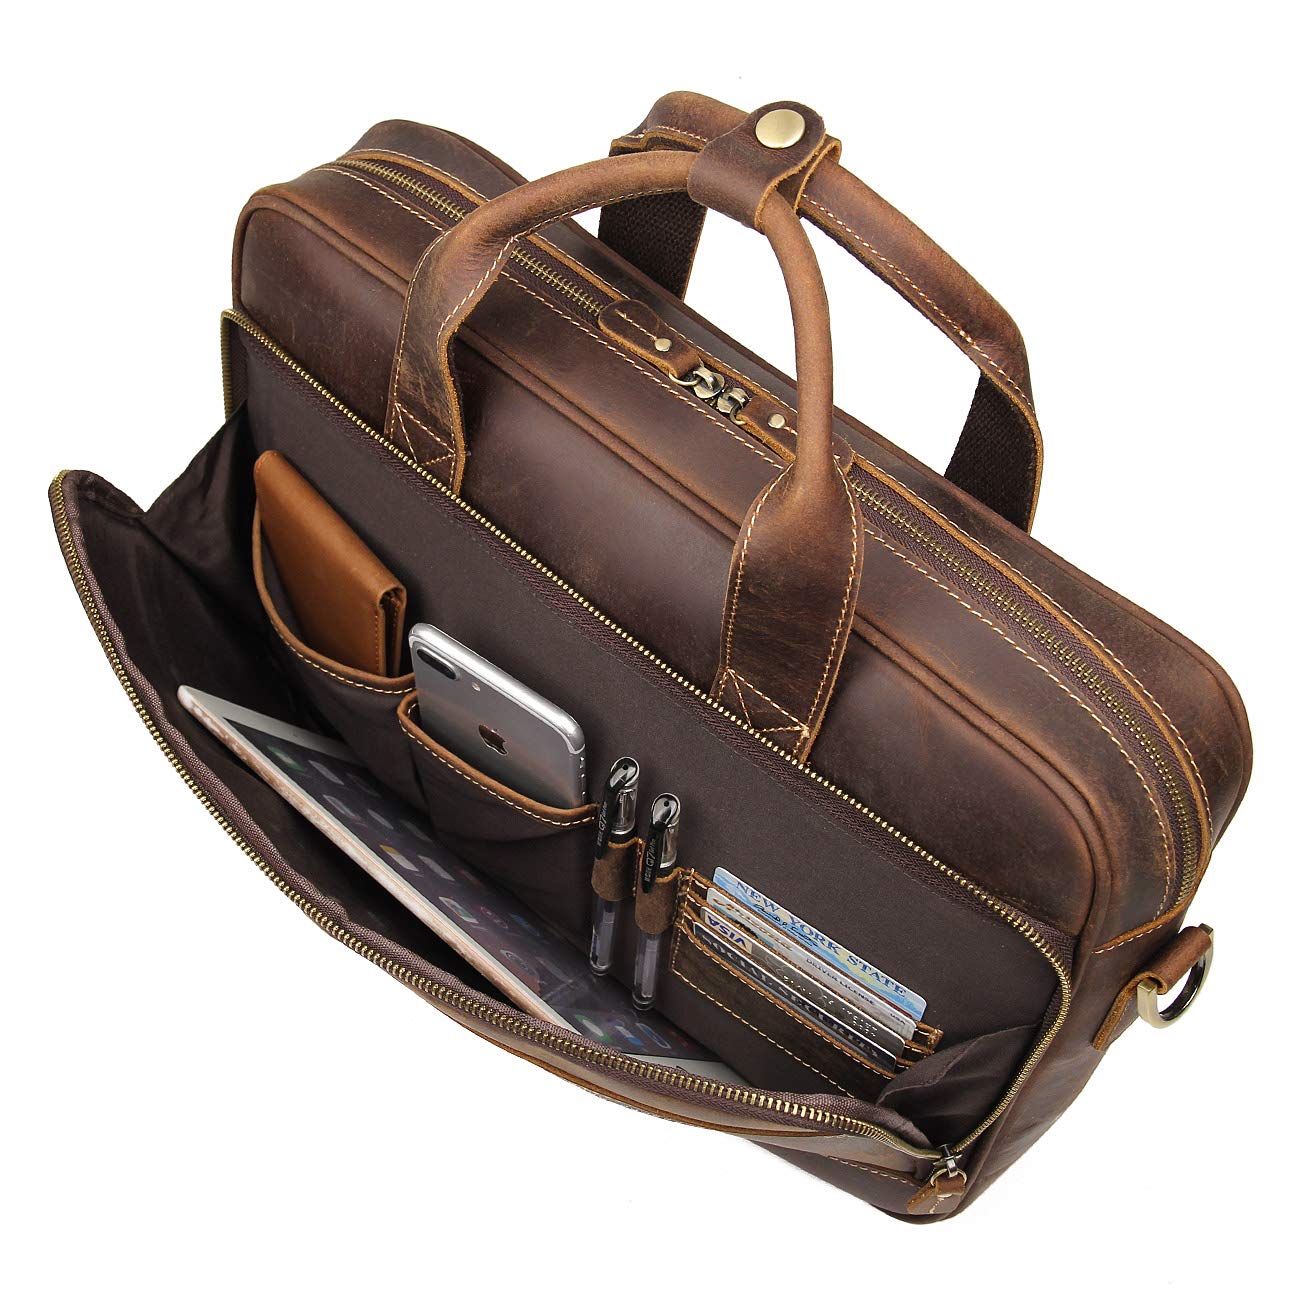 Augus Leather Messenger Bag for Men Vintage Travel Backpack 17 inch laptop Briefcase Shoulder Bags